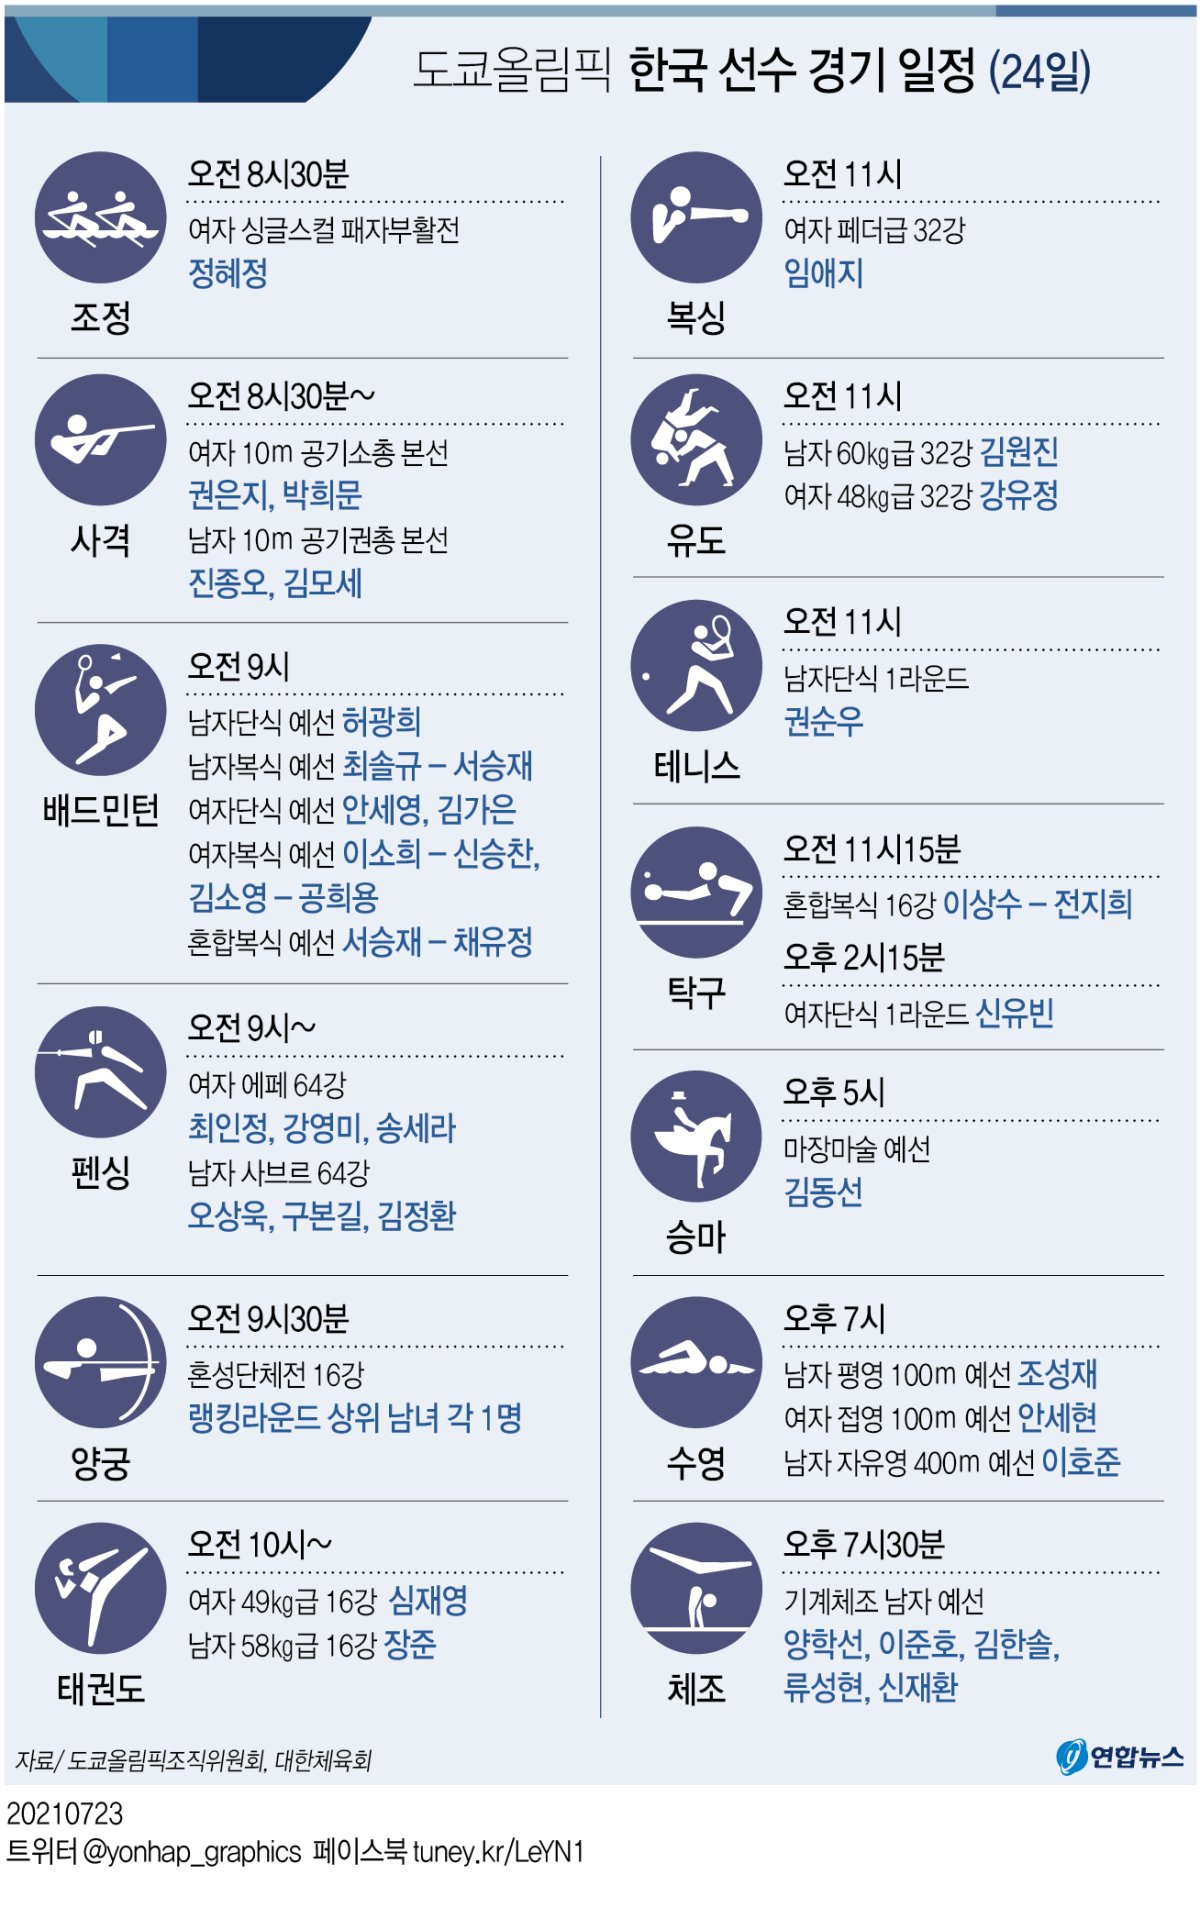 [그래픽] 도쿄올림픽 한국 선수 경기 일정(24일)